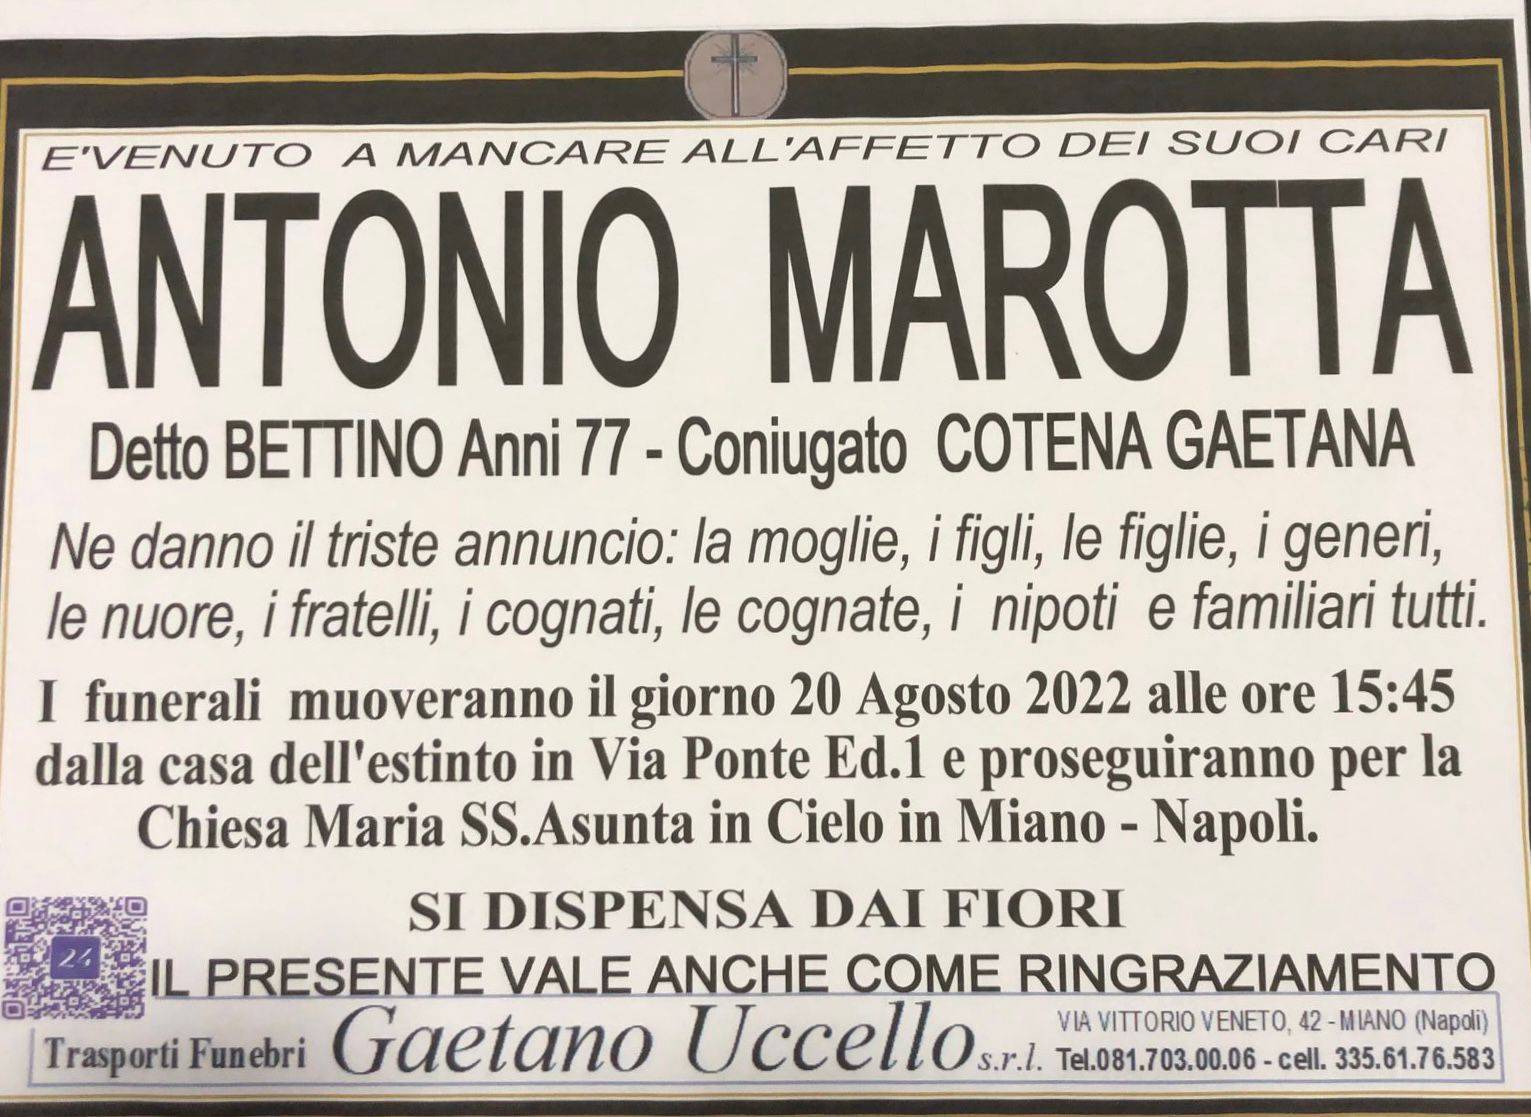 Antonio Marotta